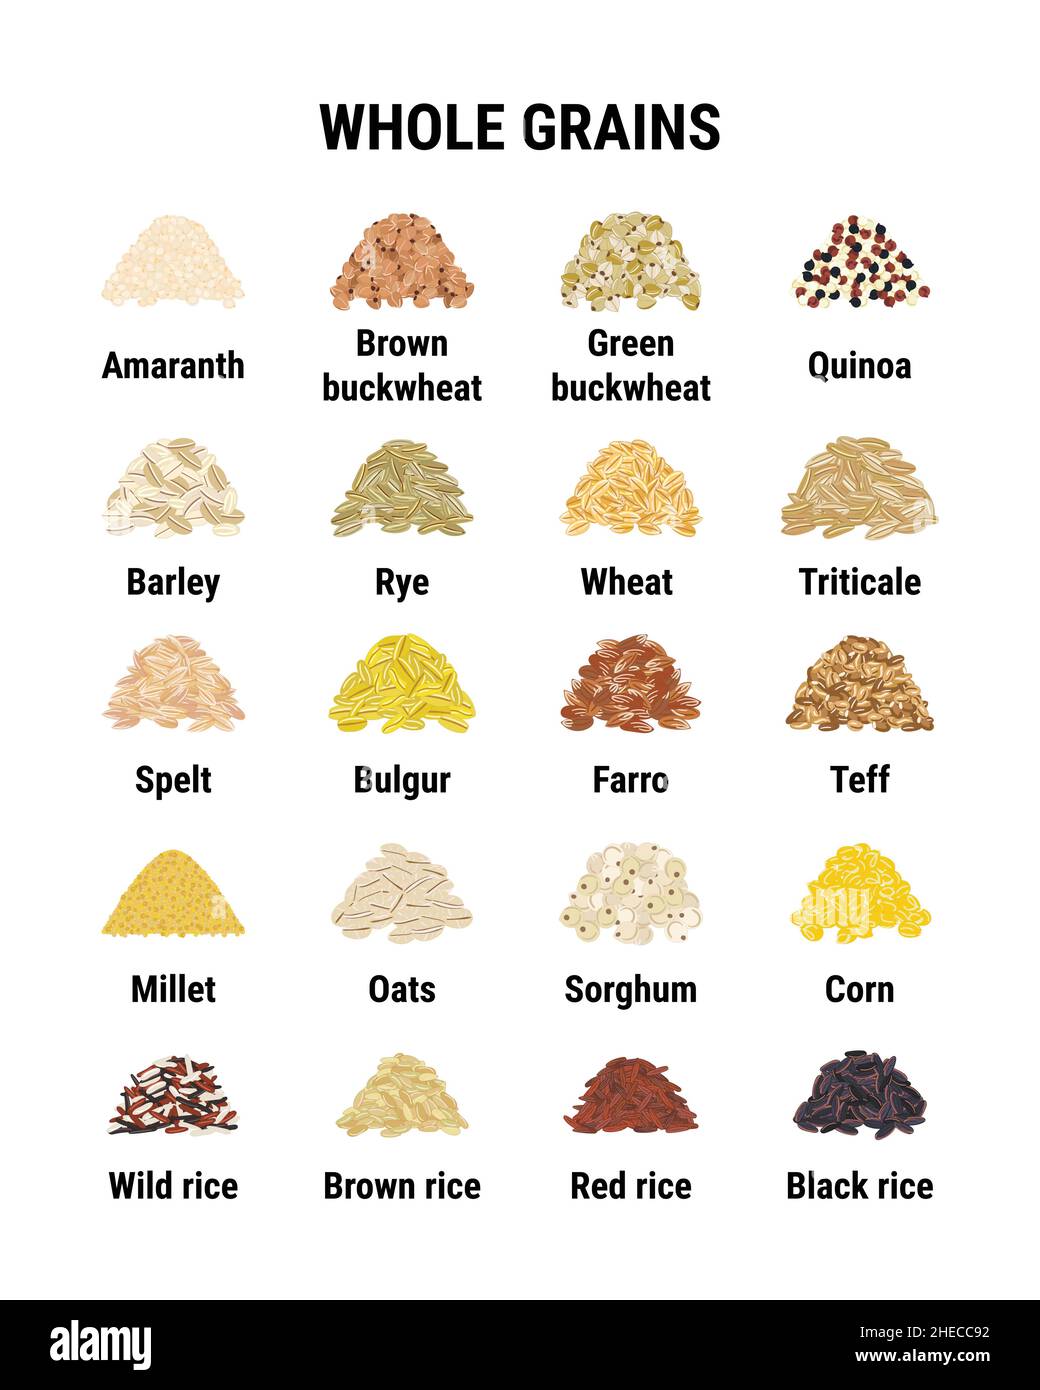 Infografik Vollkornprodukte. Gesunde Getreidekörner. Weizen, Gerste, brauner Reis, Buchweizen, Quinoa. Handgezeichnete Vektorgrafik Stock Vektor